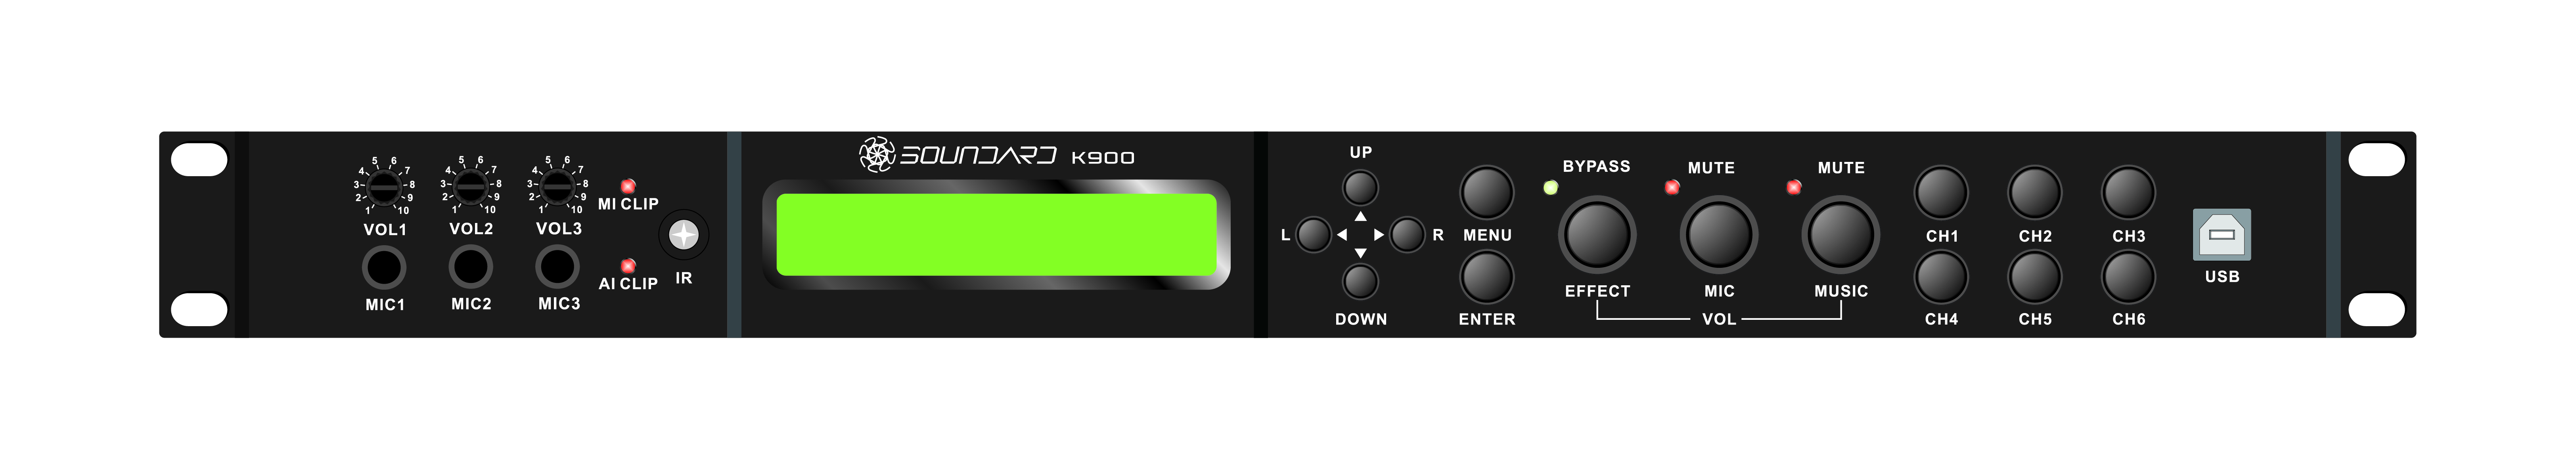 Mixer Amplifier K900